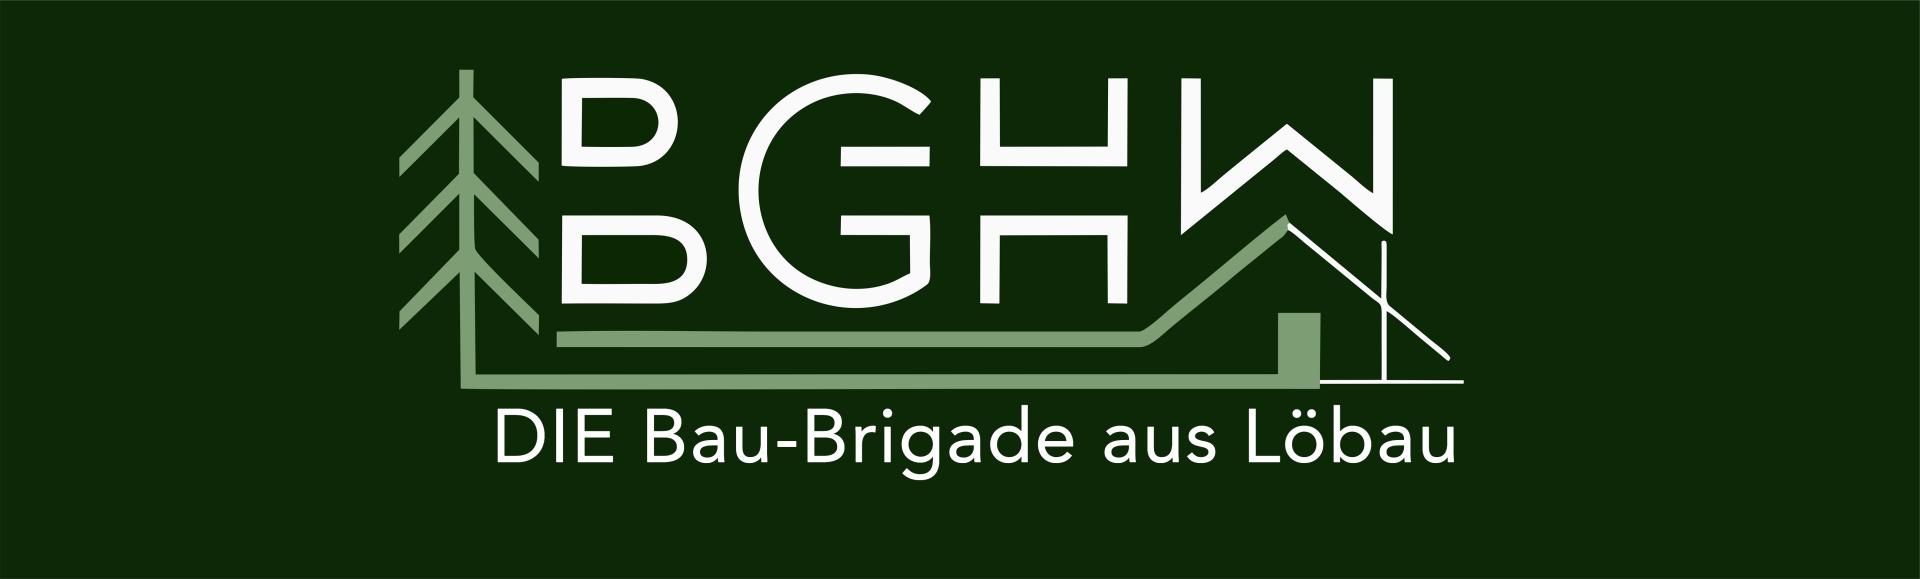 BGHW die Brigade